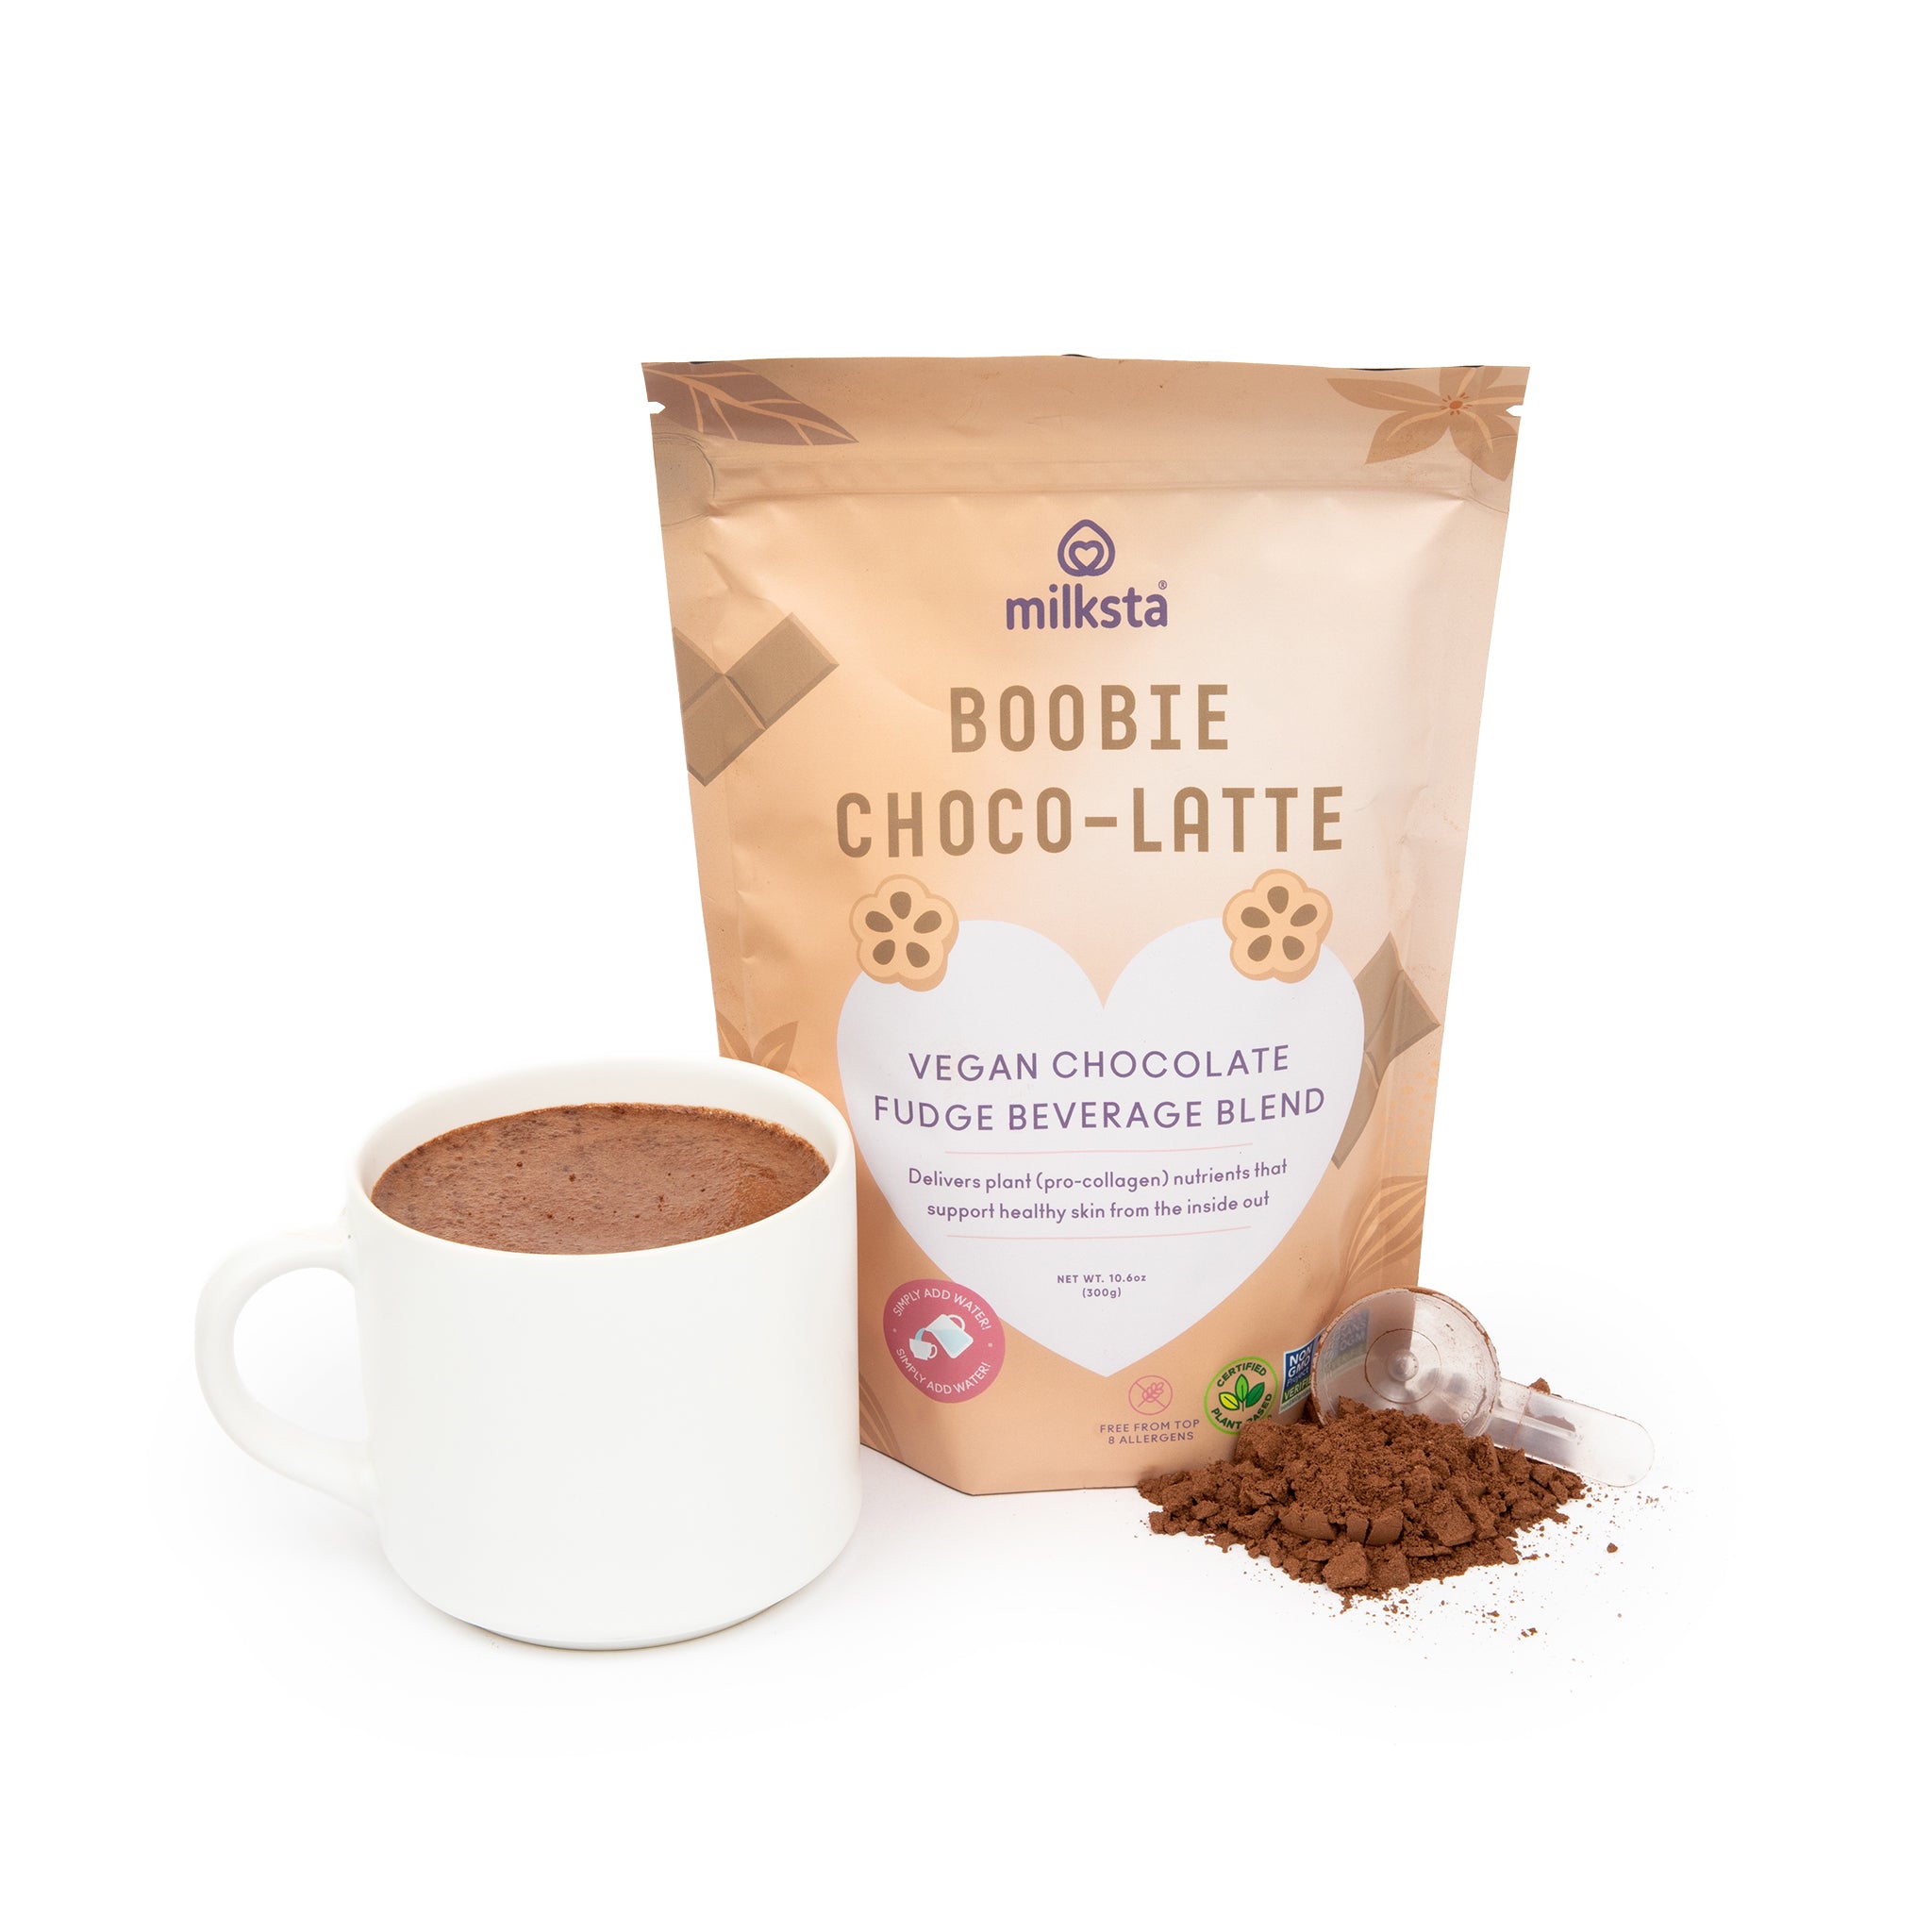 Boobie Choco-Latte